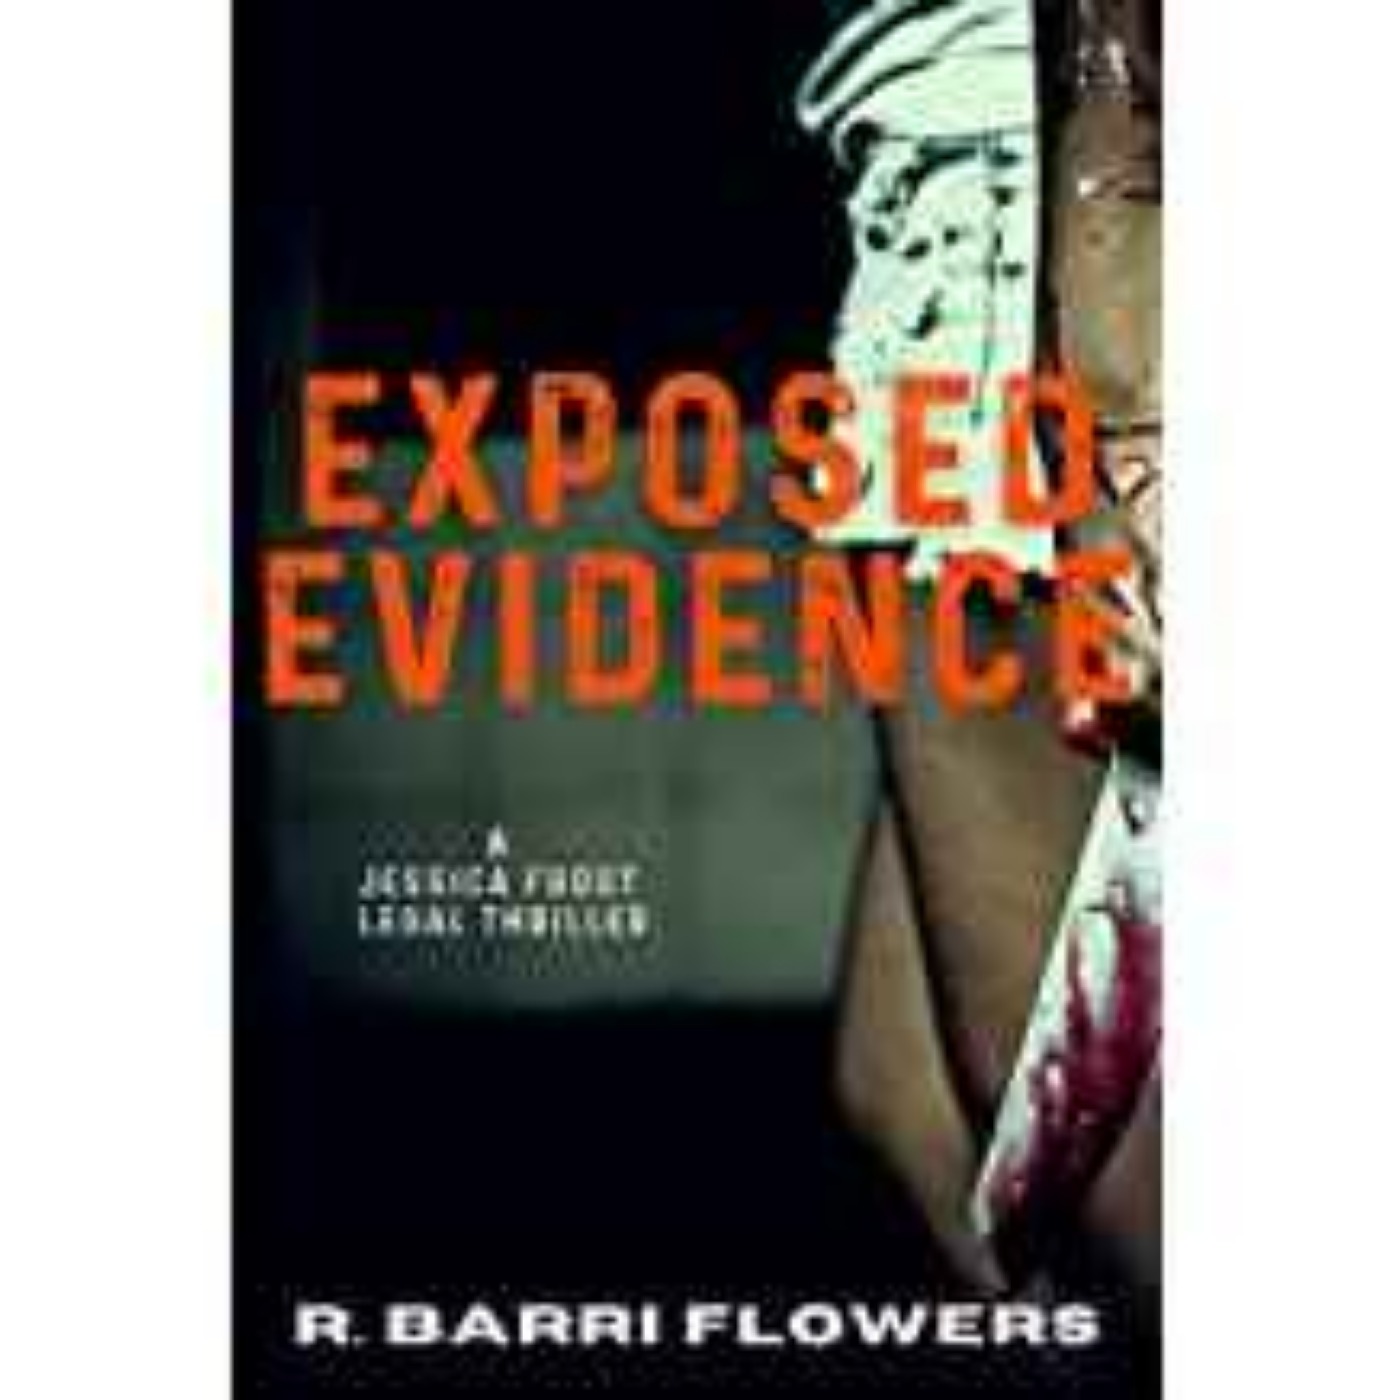 cover art for R. Barri Flowers - Exposed Evidence 